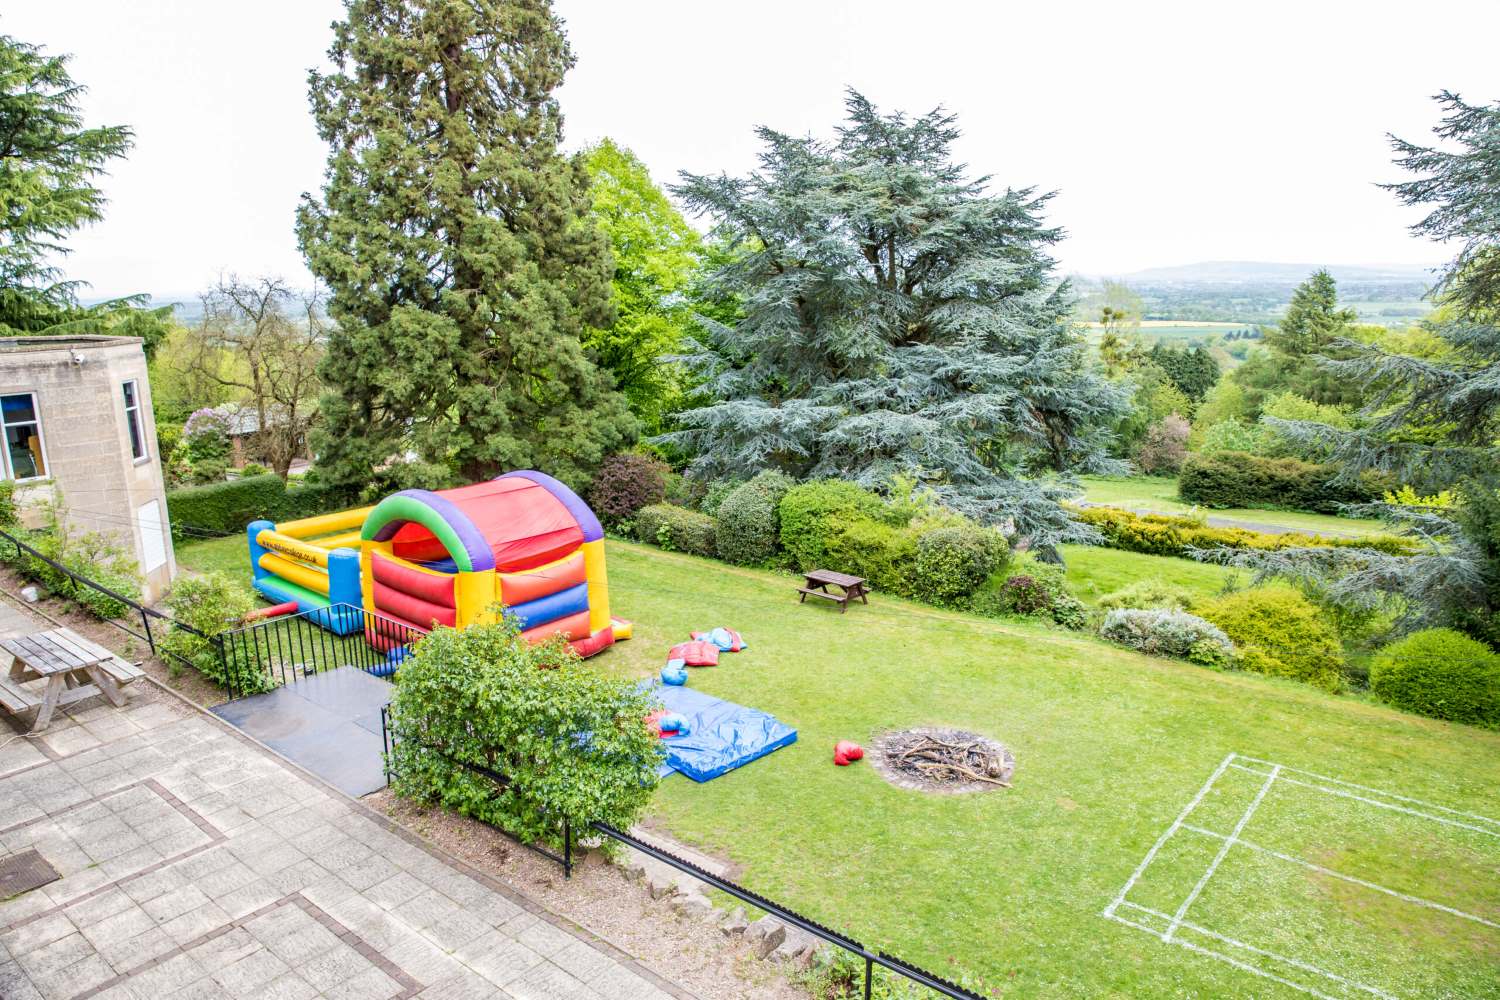 Bouncy-castle-in-garden-scaled